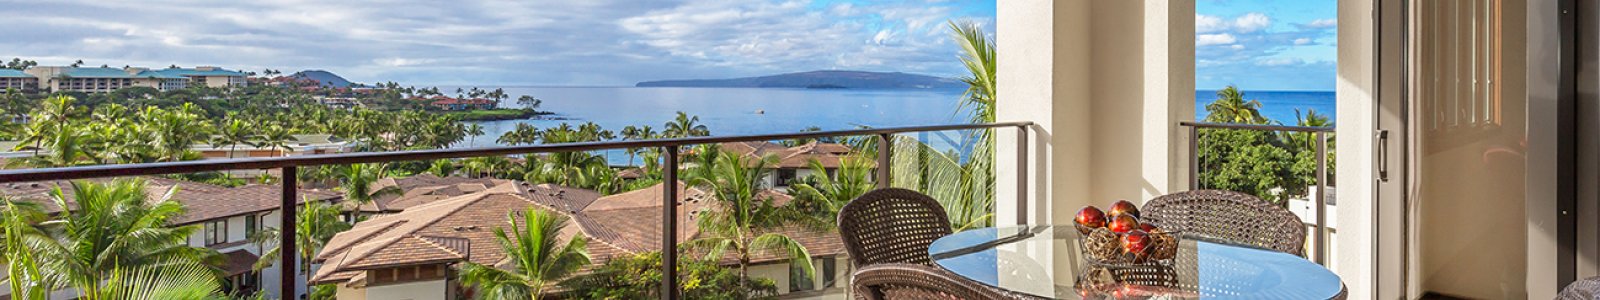 Wailea Beach Villas Vacation Rentals & Villas | Maui's Finest